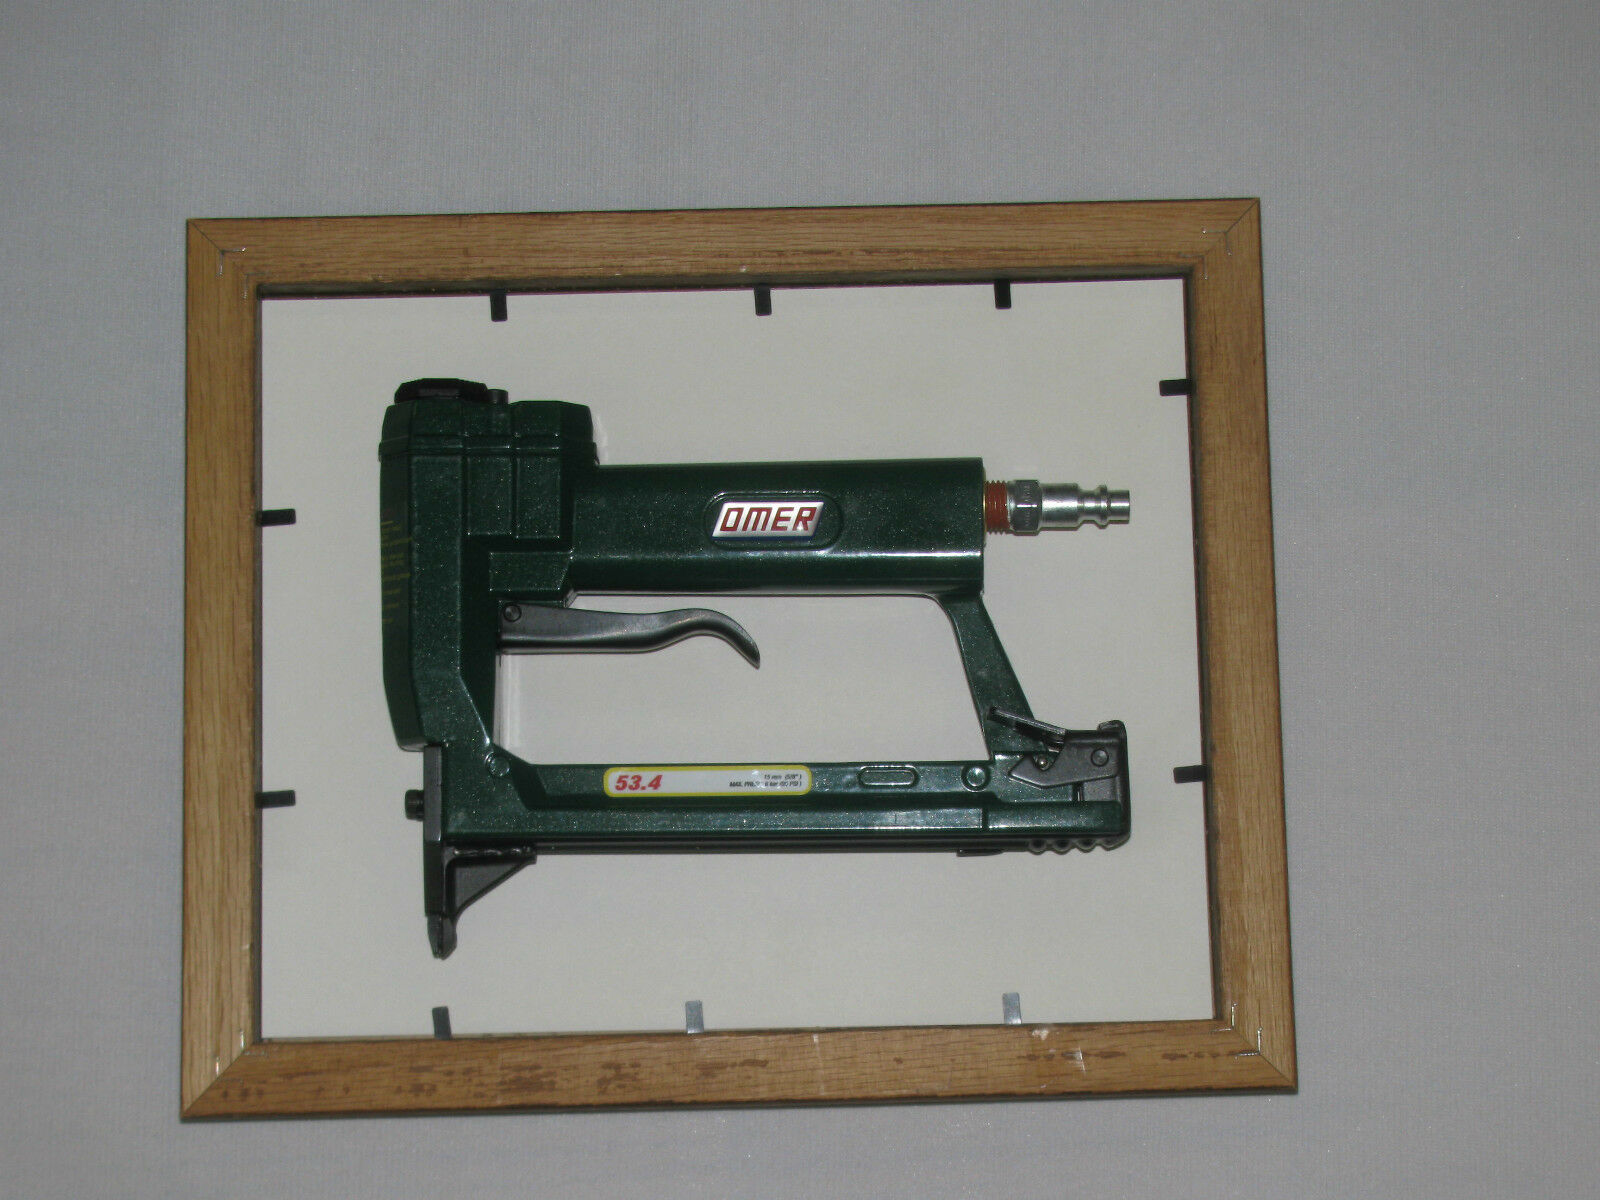 Omer OMT53 Tab Tool / Gun (New w/ warranty) Item # LS-105030